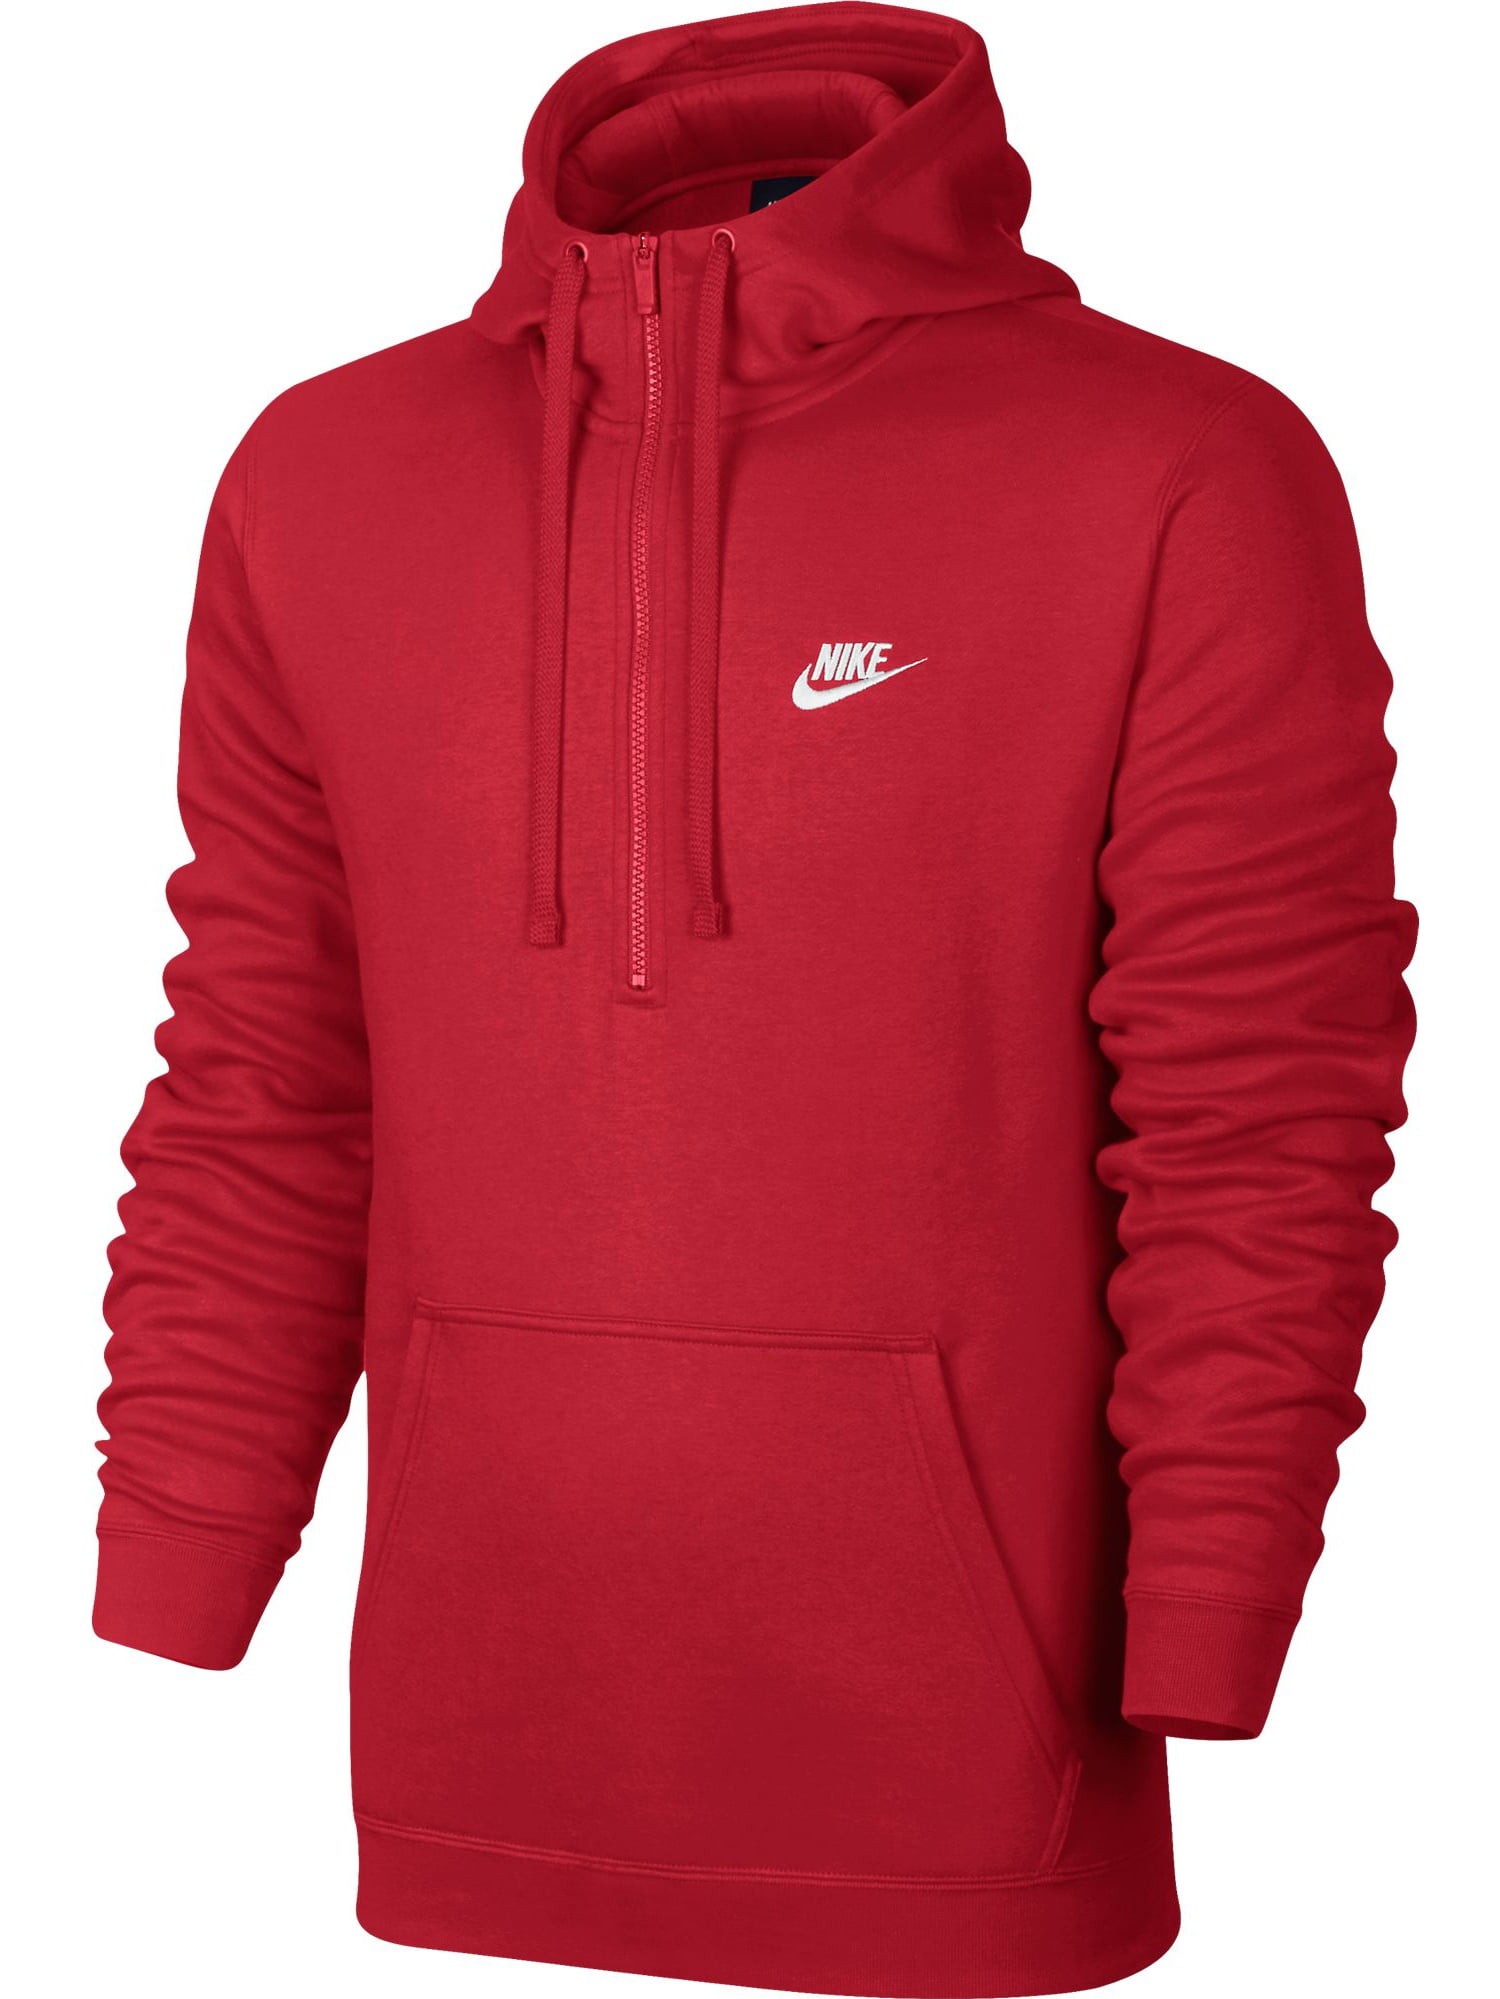 Nike - Nike Club Half Zip Longsleeve Men's Hoodie Red/White 812519-657 ...